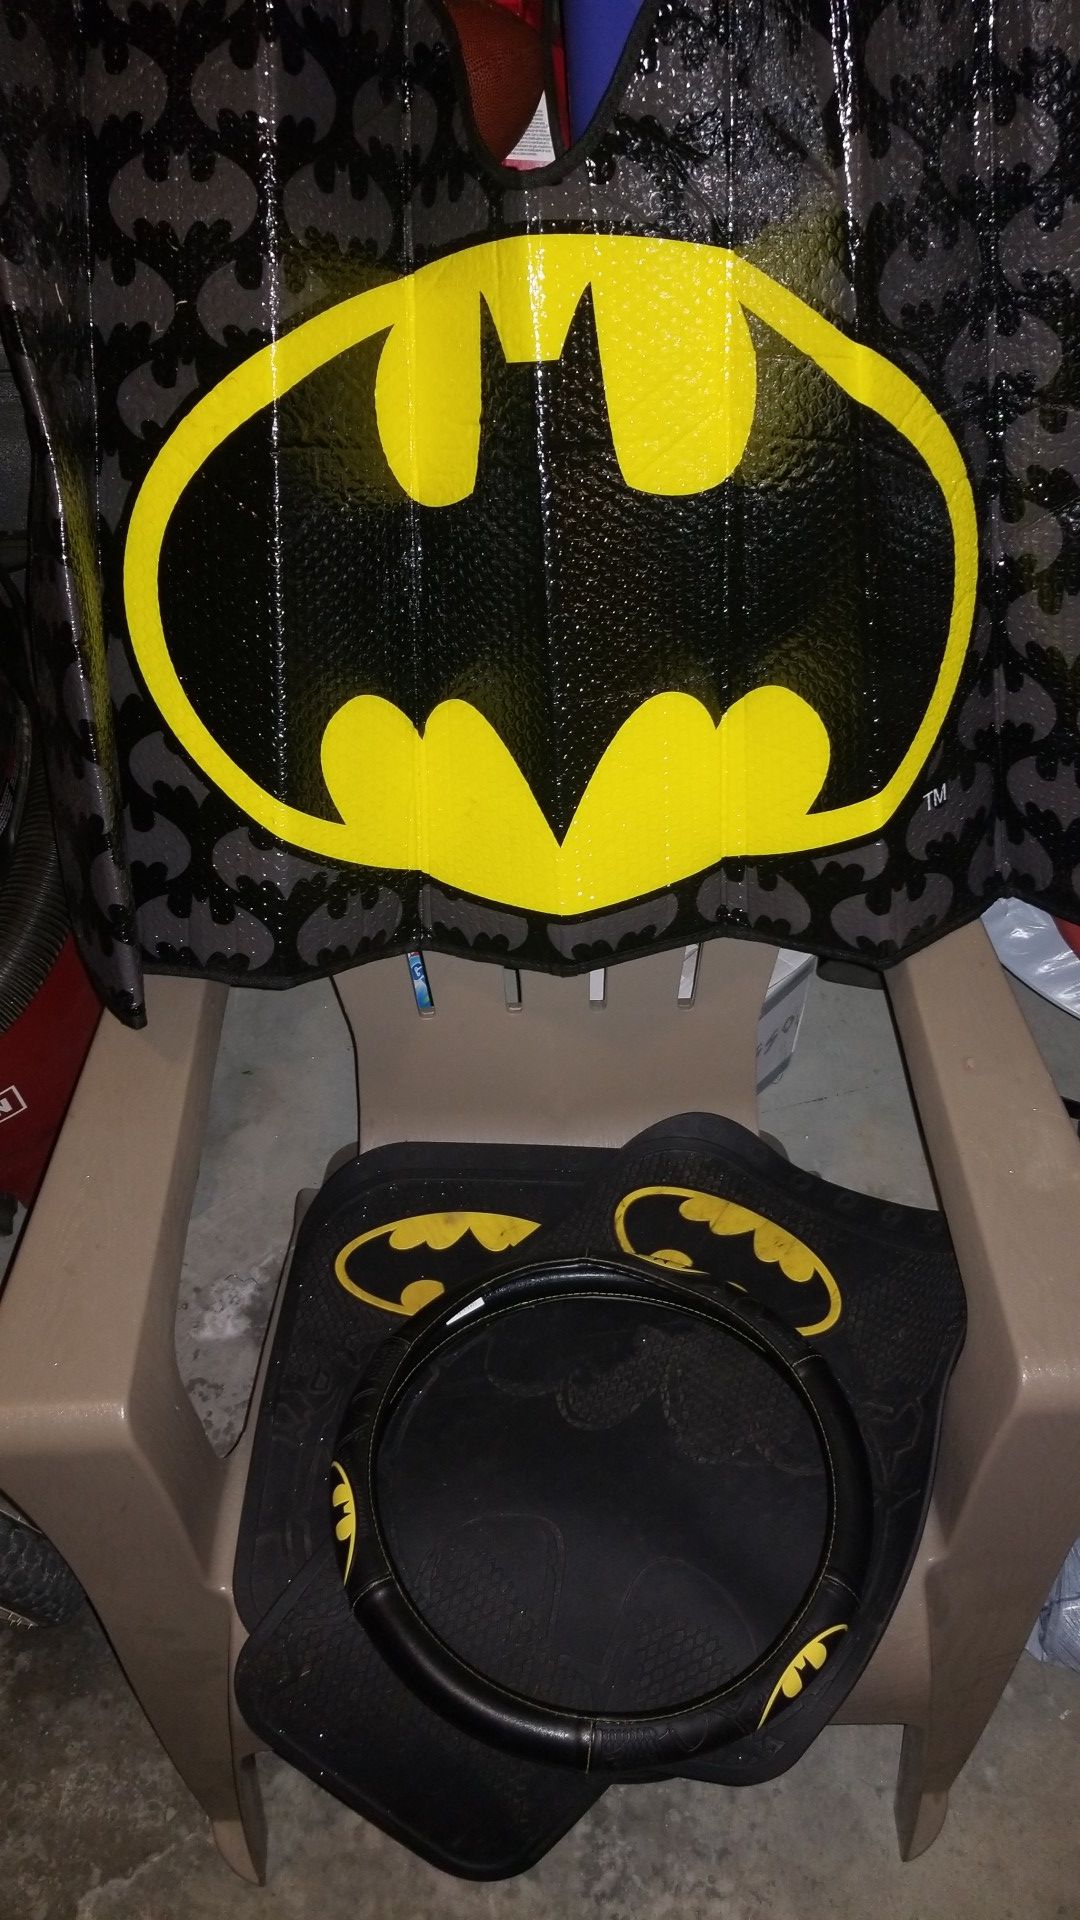 Batman car accessories